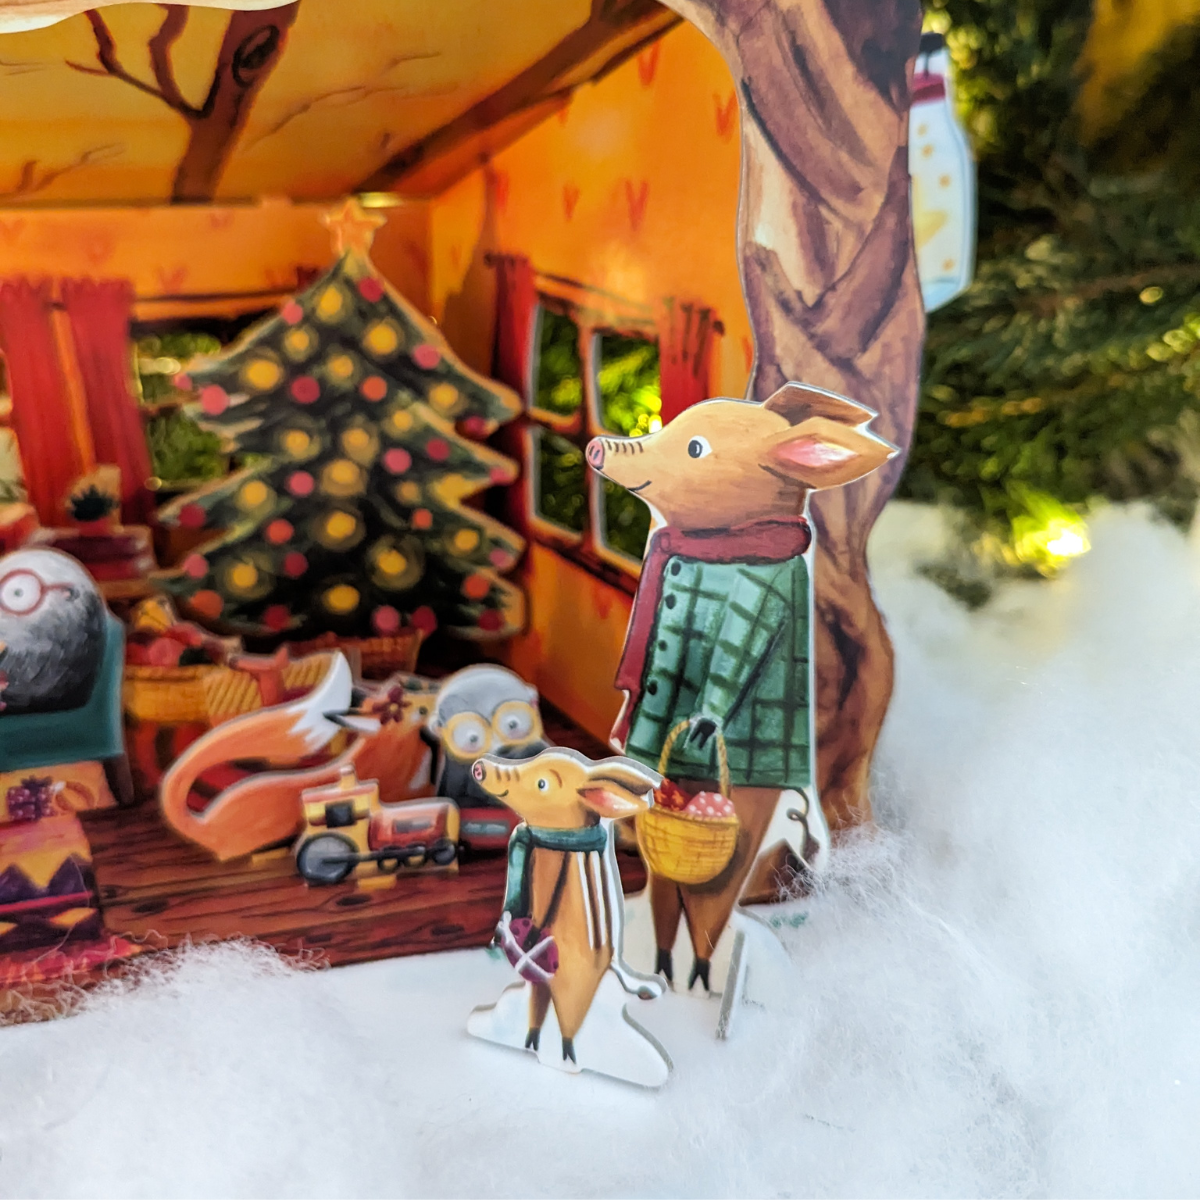 Chaque jour de décembre, ajoutez une nouvelle pièce à votre terrier en construction, et lentement, il prendra vie sous vos yeux émerveillés. C'est comme si vous participiez à la préparation de la fête de Noël dans les bois avec M. Blaireau et ses amis.